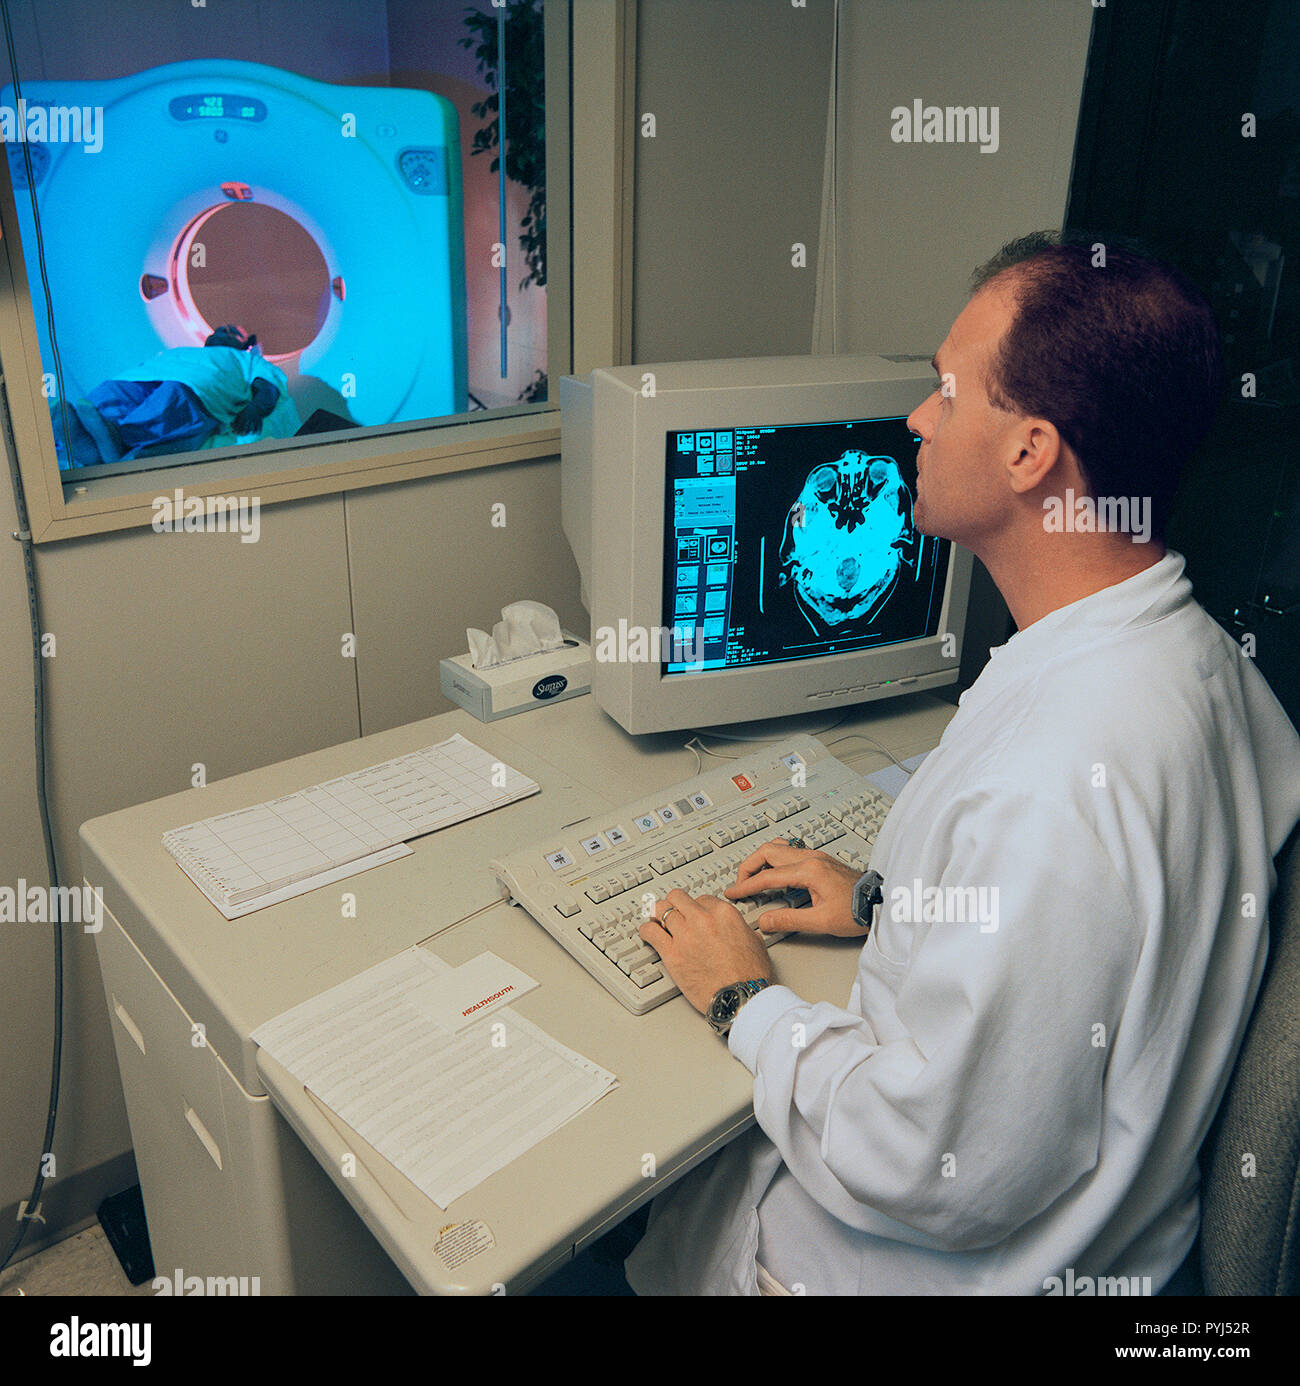 Die high-tech-Kunst der digitalen Signalverarbeitung (DSP) war Pionier des NASA Jet Propulsion Laboratory (JPL) in der Mitte der 1960er Jahre für den Einsatz in der Apollo Mondlandung Programm. Zu computer Bilder des Mondes verbessern entwickelt. Diese Technologie wurde die Grundlage für die Ressourcen der Erde Landsat Satelliten und später in eine Vielzahl von Earthbound medizinische und diagnostische Tools eingearbeitet. DSP ist im erweiterten Körper bildgebende Verfahren wie Computer Aided Tomographie eingesetzt, auch bekannt als CT und CATScan und Magnetresonanztomographie (MRT). Stockfoto